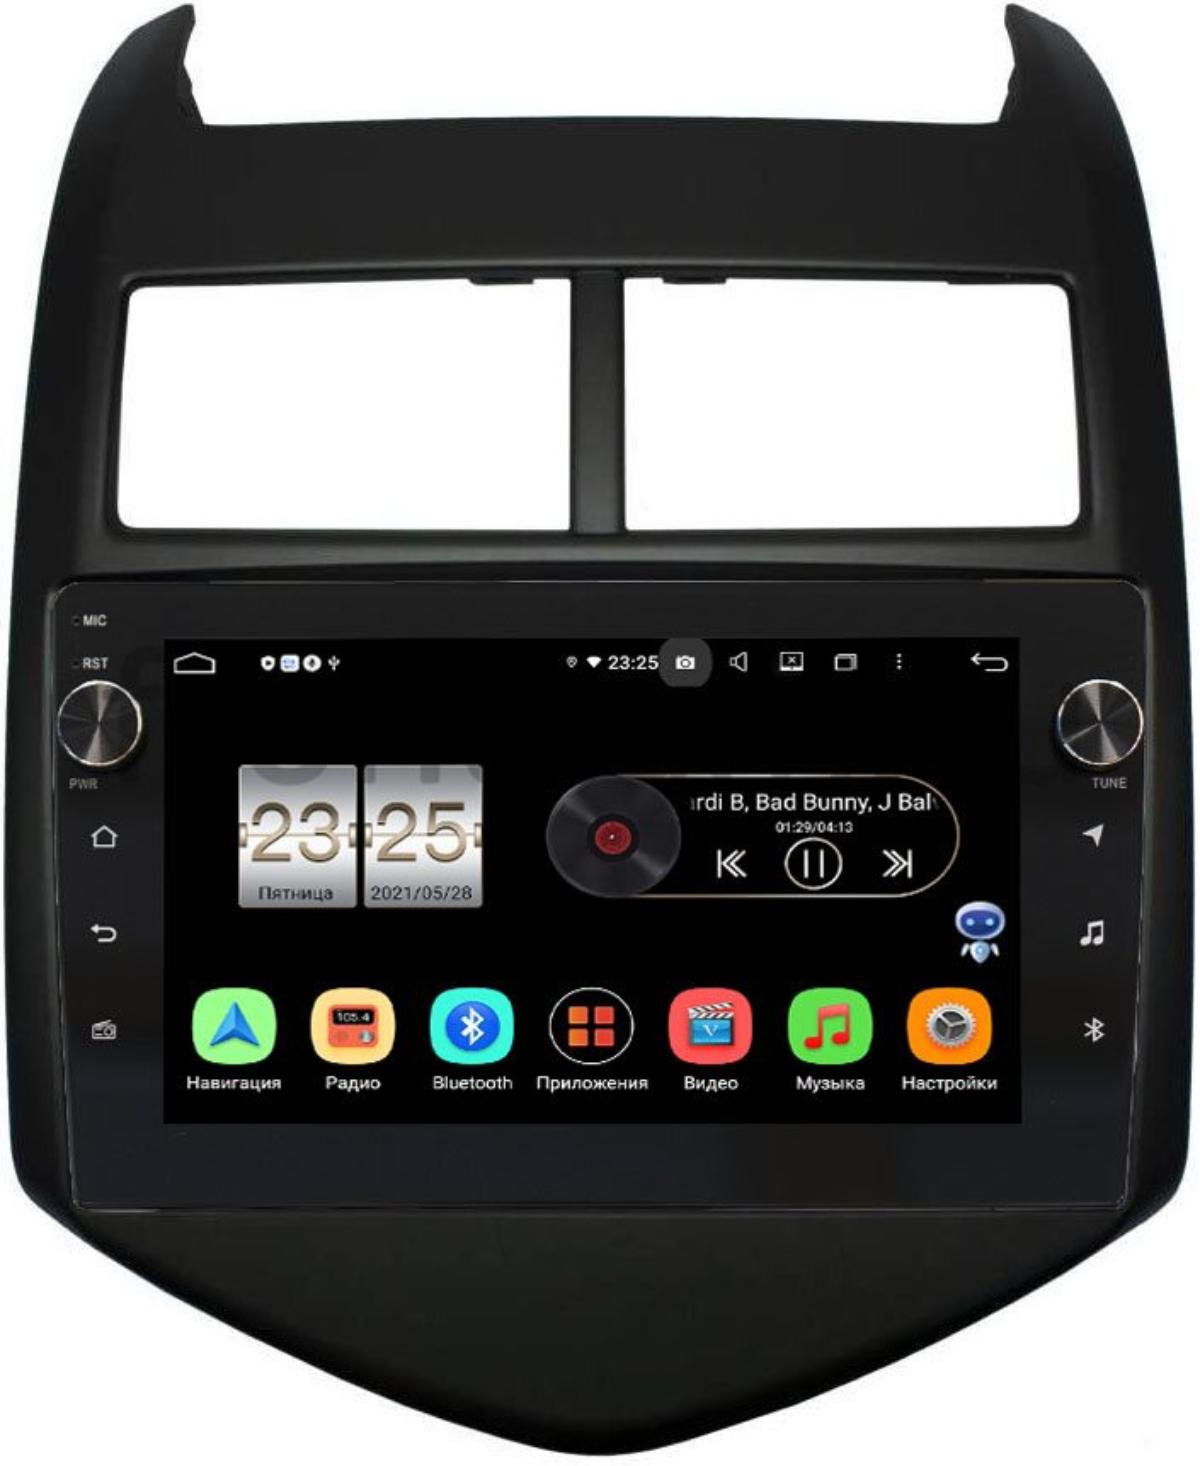 Штатная магнитола LeTrun BPX409-9009 для Chevrolet Aveo II 2011-2015 на Android 10 (4/32, DSP, IPS, с голосовым ассистентом, с крутилками) (+ Камера заднего вида в подарок!)